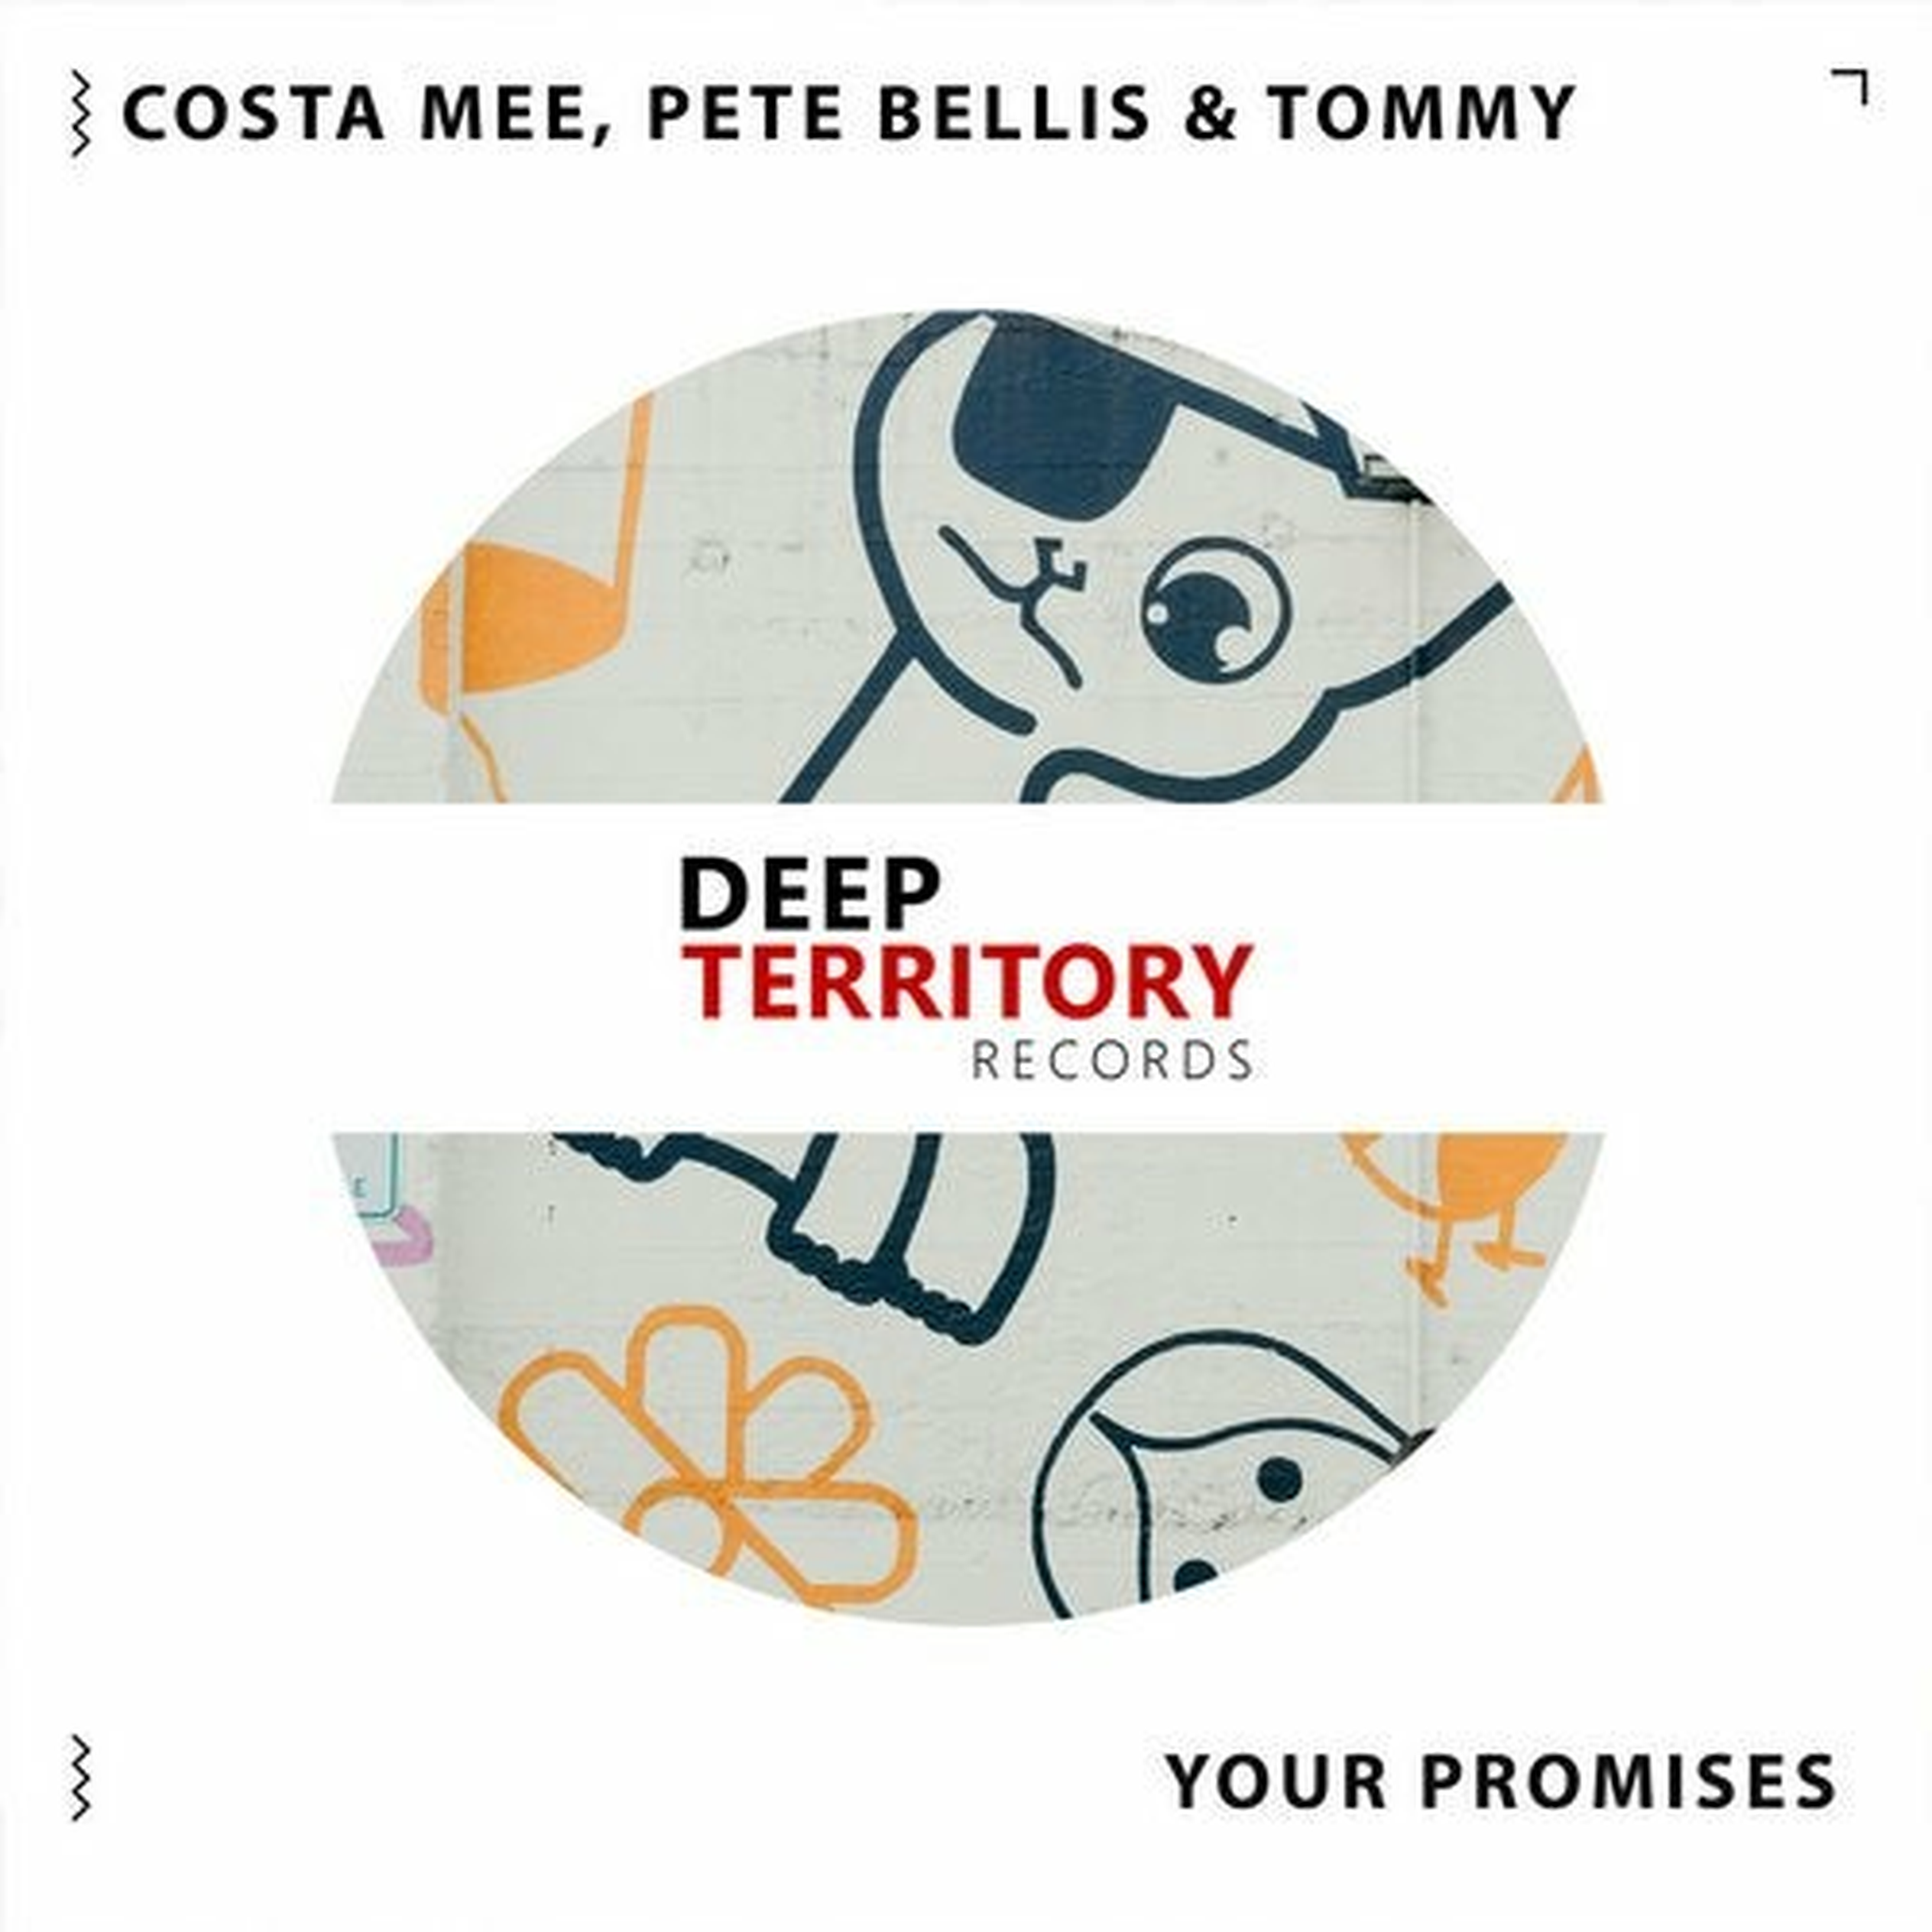 Costa mee mix. Costa mee & Pete Bellis & Tommy. Costa mee & Pete Bellis & Tommy - empty Promises. Costa mee Pete Bellis Tommy looking for you. Pete Bellis Deep Territory.